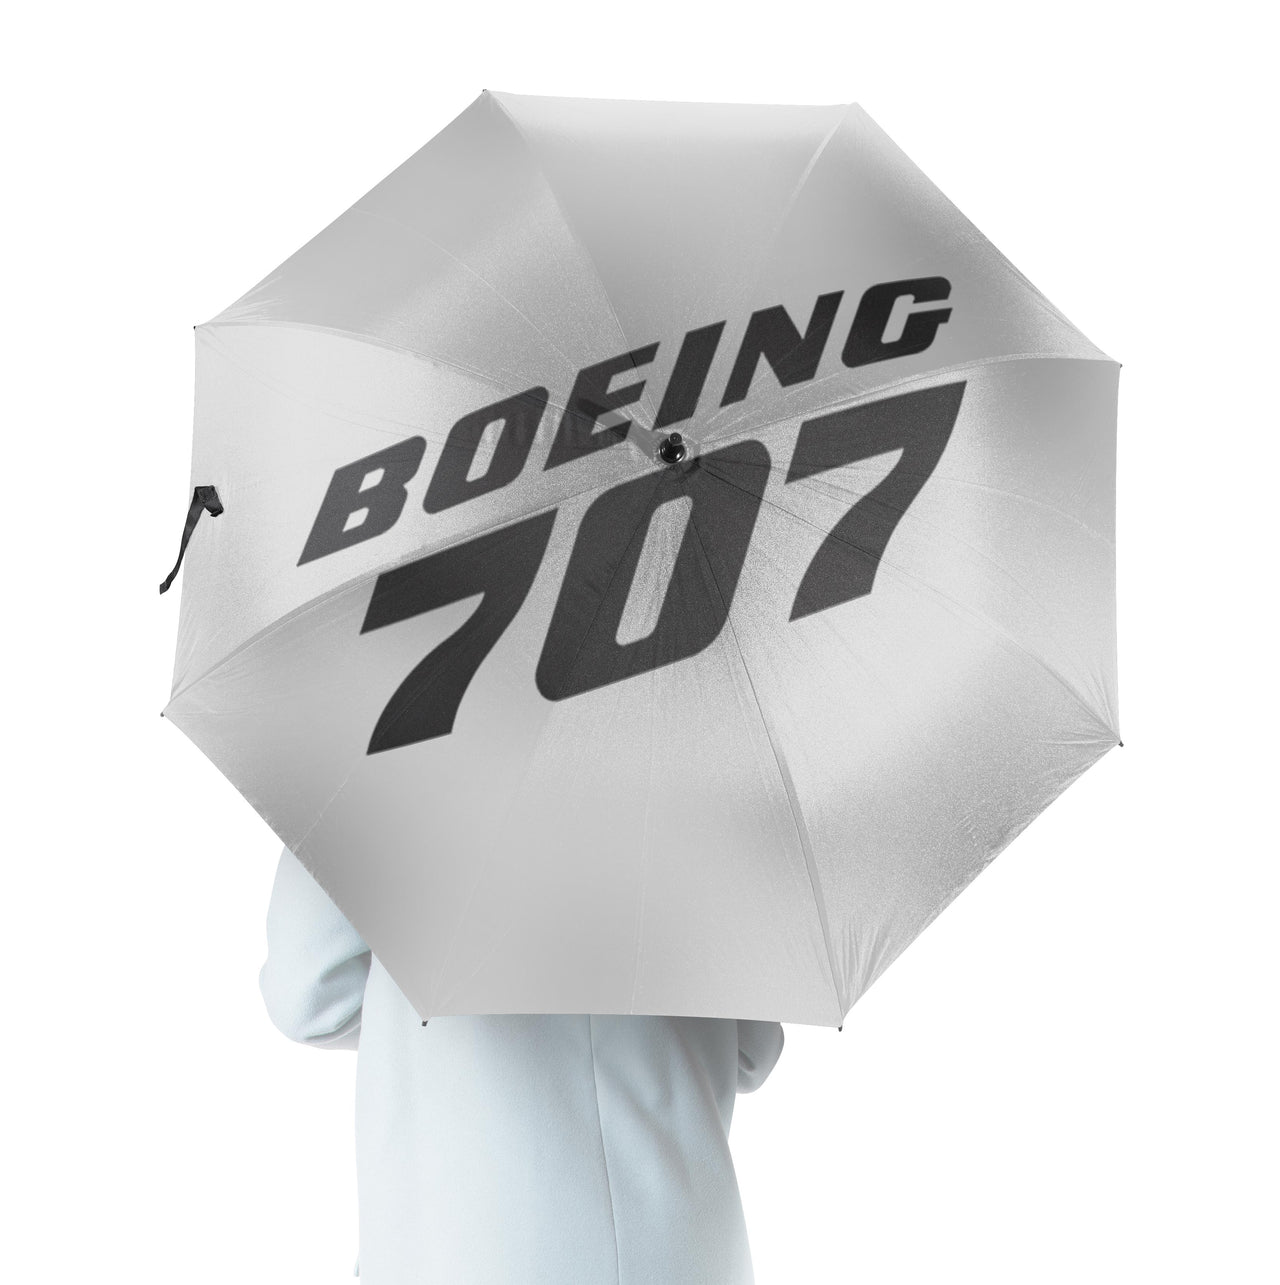 Boeing 707 & Text Designed Umbrella